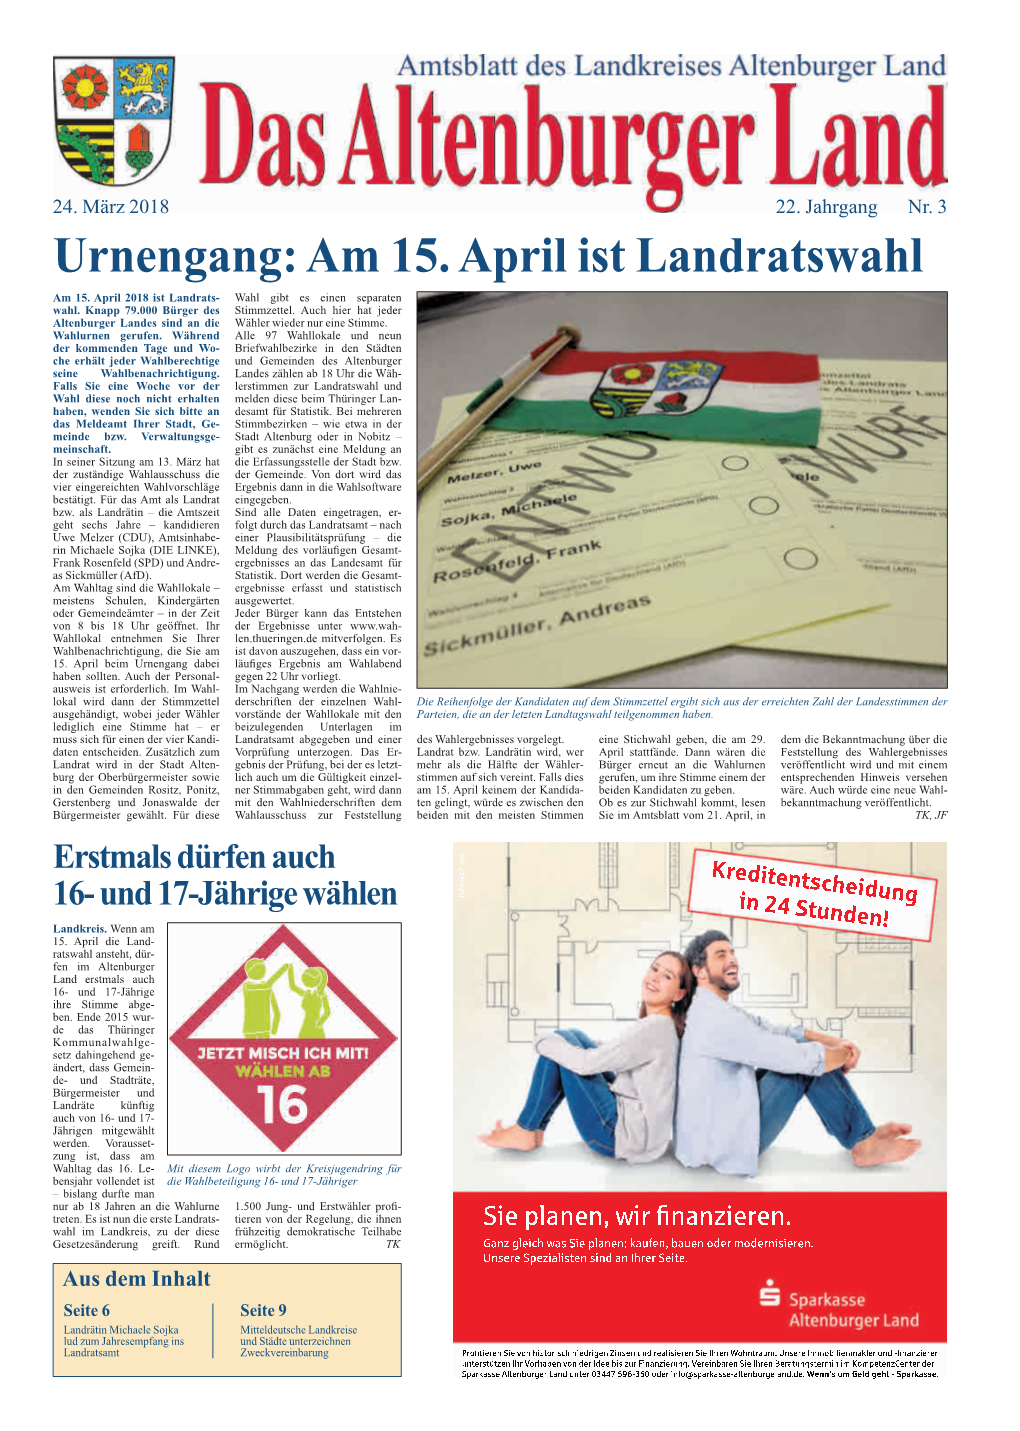 Amtsblatt Nr. 4 Am 24. März 2018